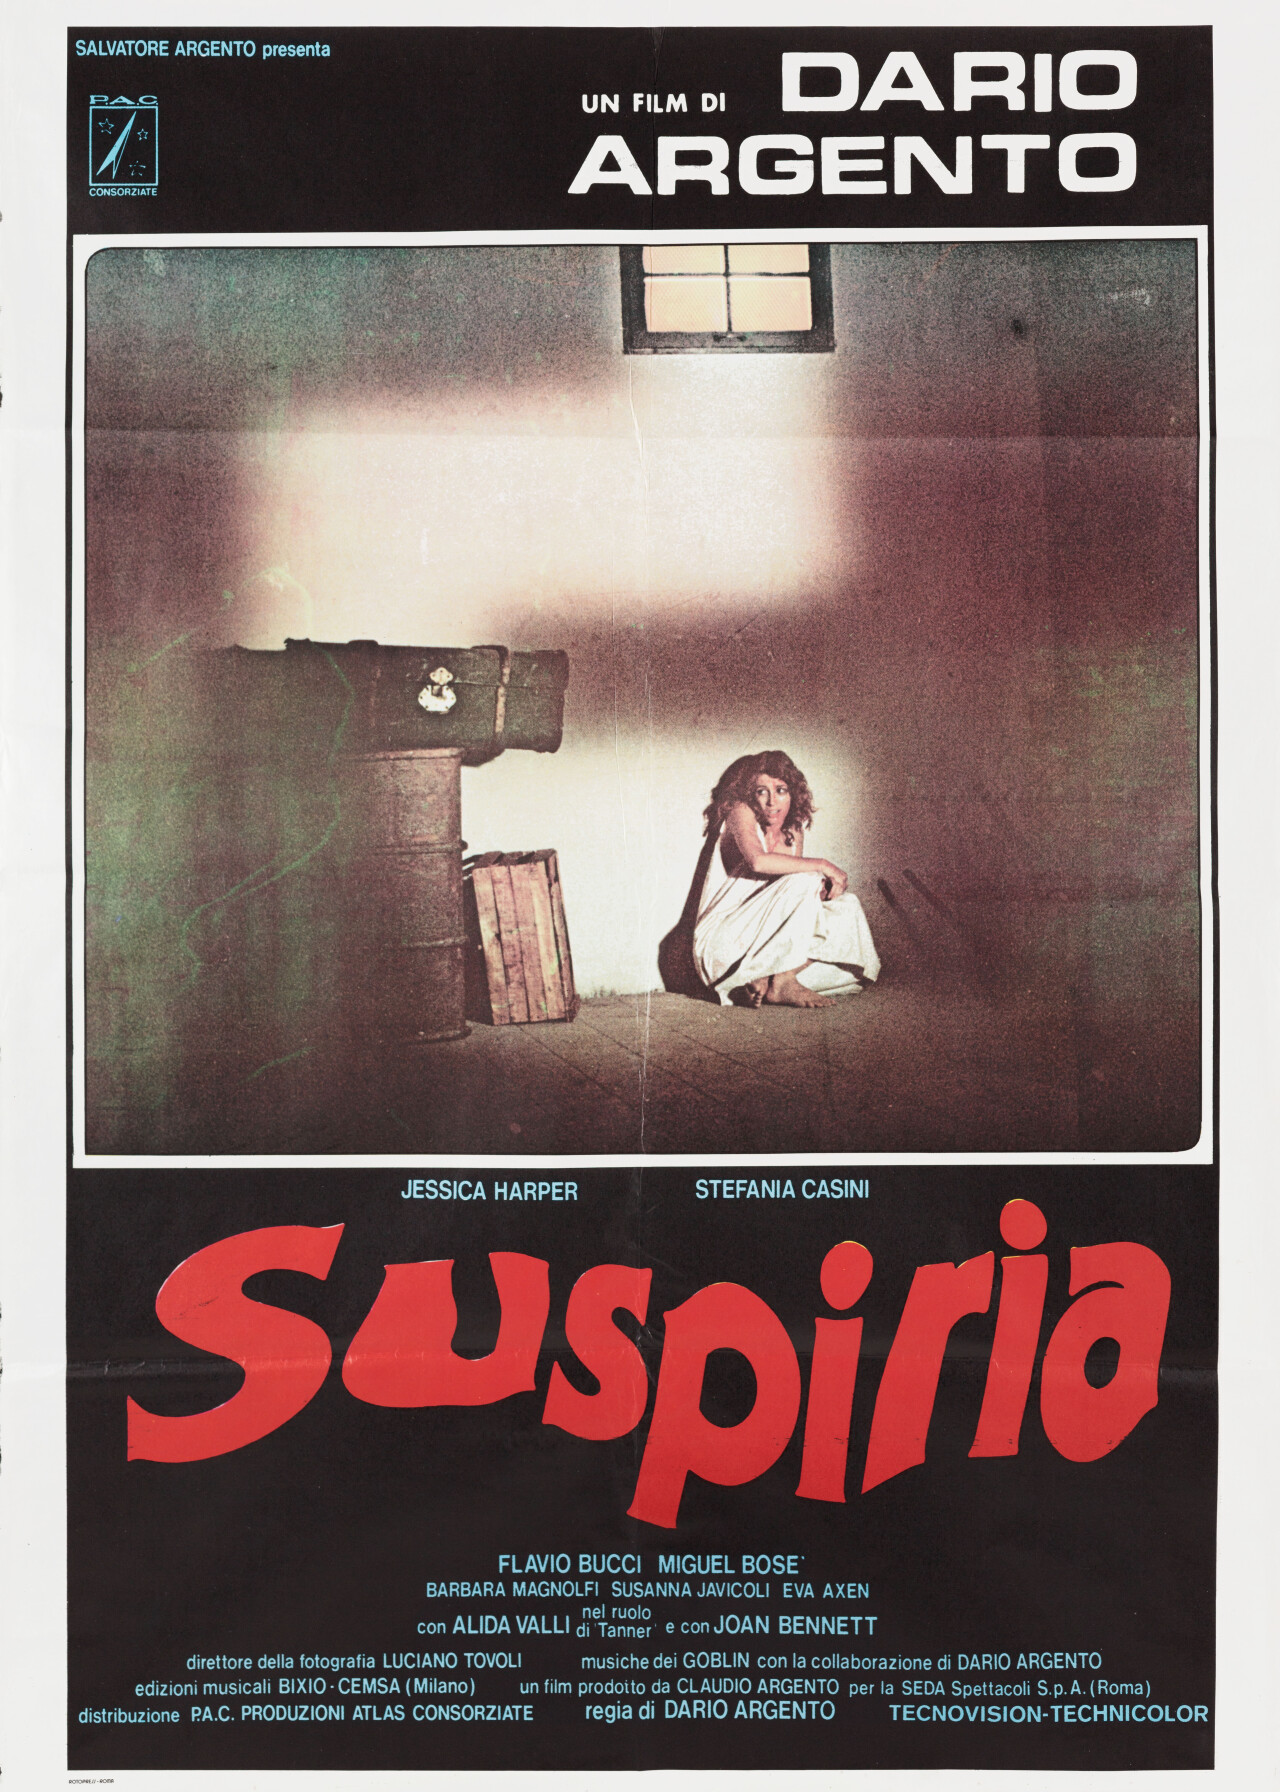 Суспирия (Suspiria, 1977), режиссёр Дарио Ардженто, итальянский постер к фильму (ужасы, 1977 год) (2)